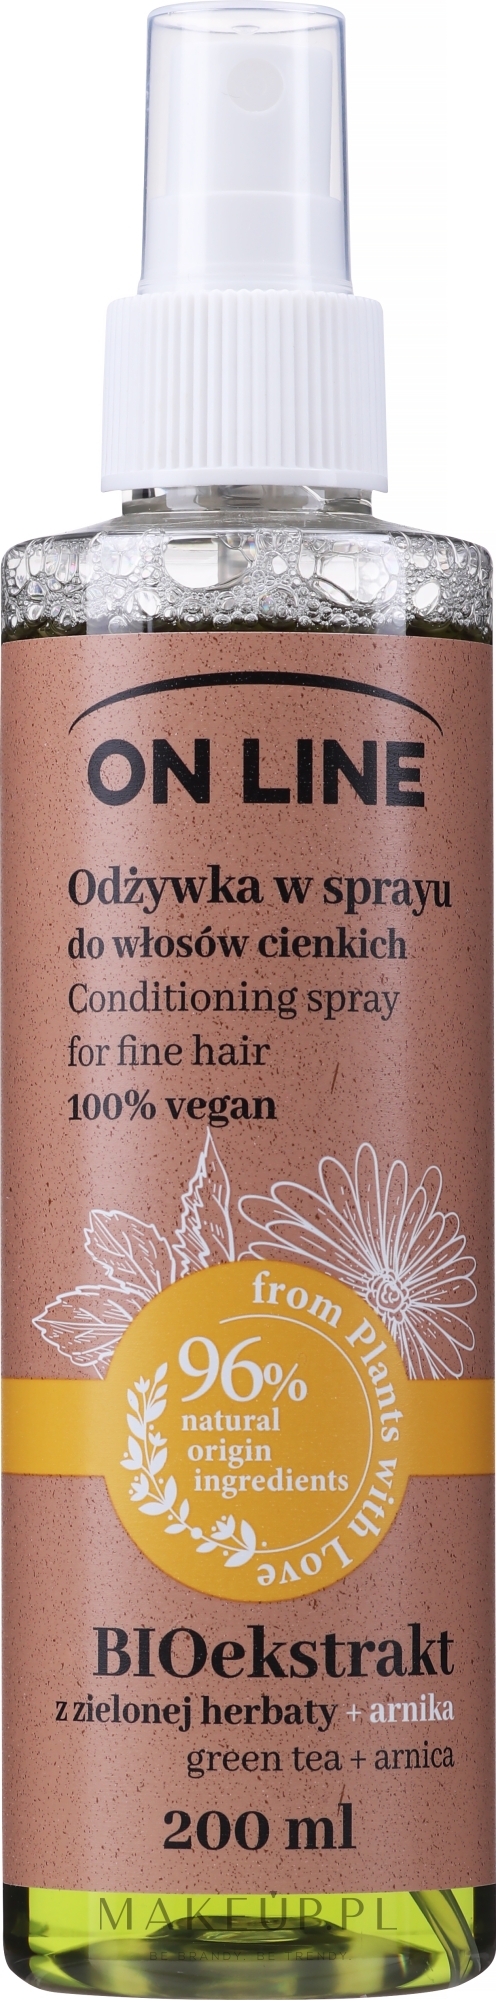 Odżywka w sprayu do włosów cienkich Zielona herbata i arnika - On Line Green Tea + Arnika Conditioning Spray — Zdjęcie 200 ml